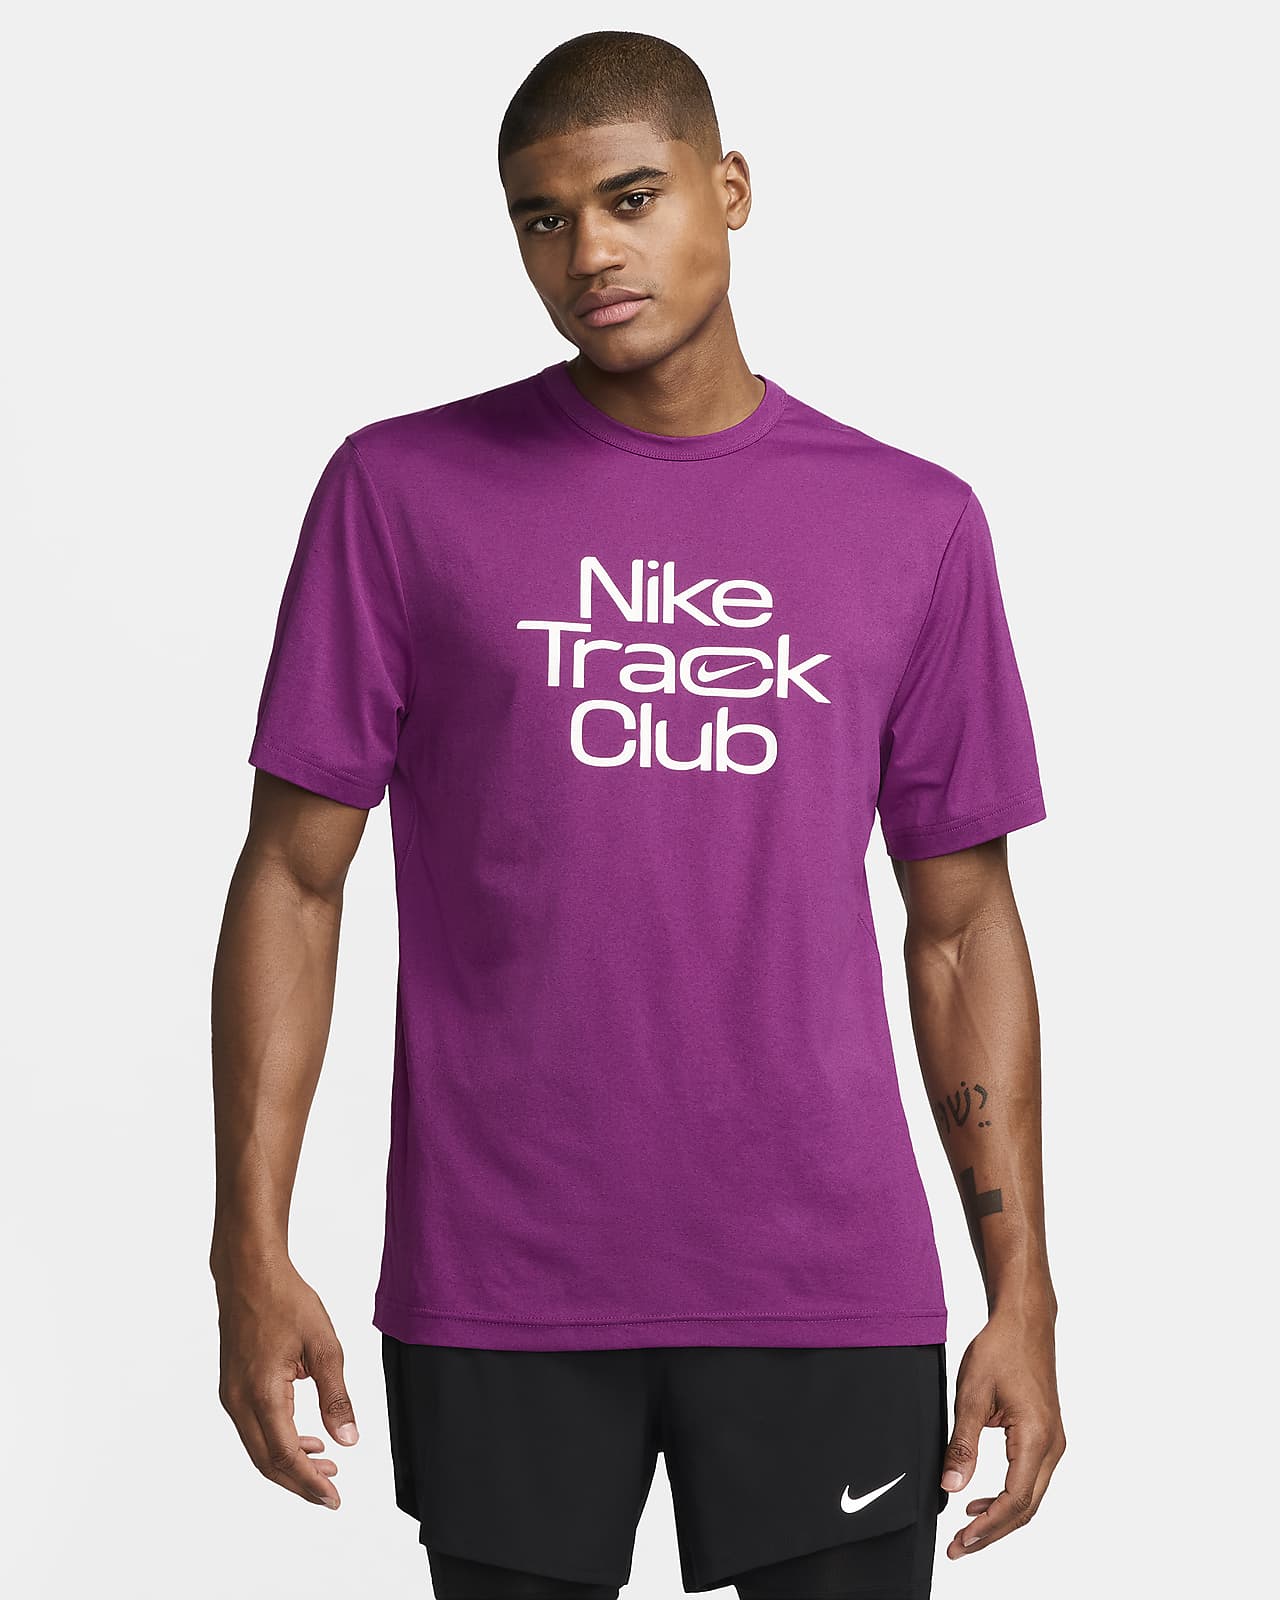 Nike Track Club Dri-FIT férfi rövid ujjú futófelső